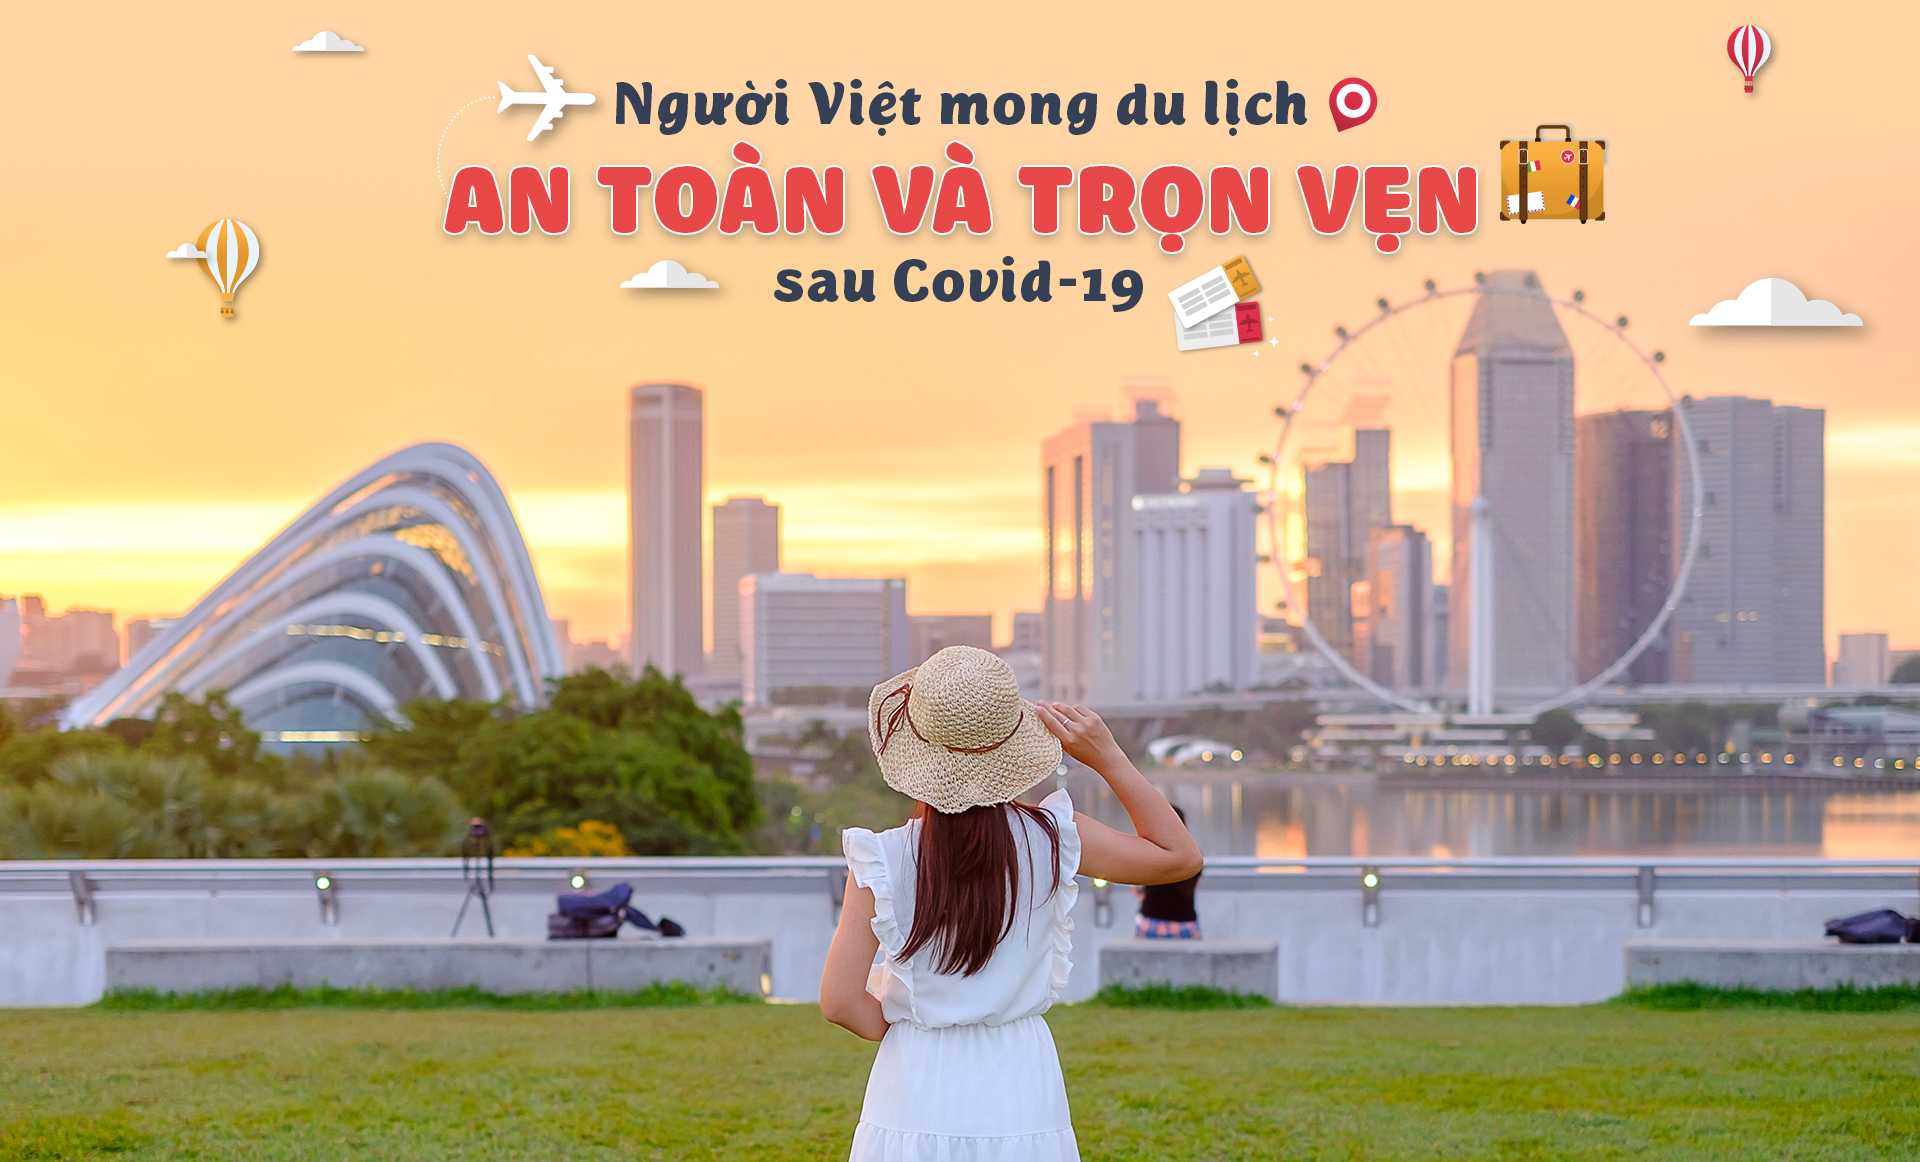 Nhân lực du lịch và đào tạo khả năng phục hồi điểm đến: “Lỗ hỏng” của du lịch Việt Nam sau chính sách mở cửa - Ảnh 4.